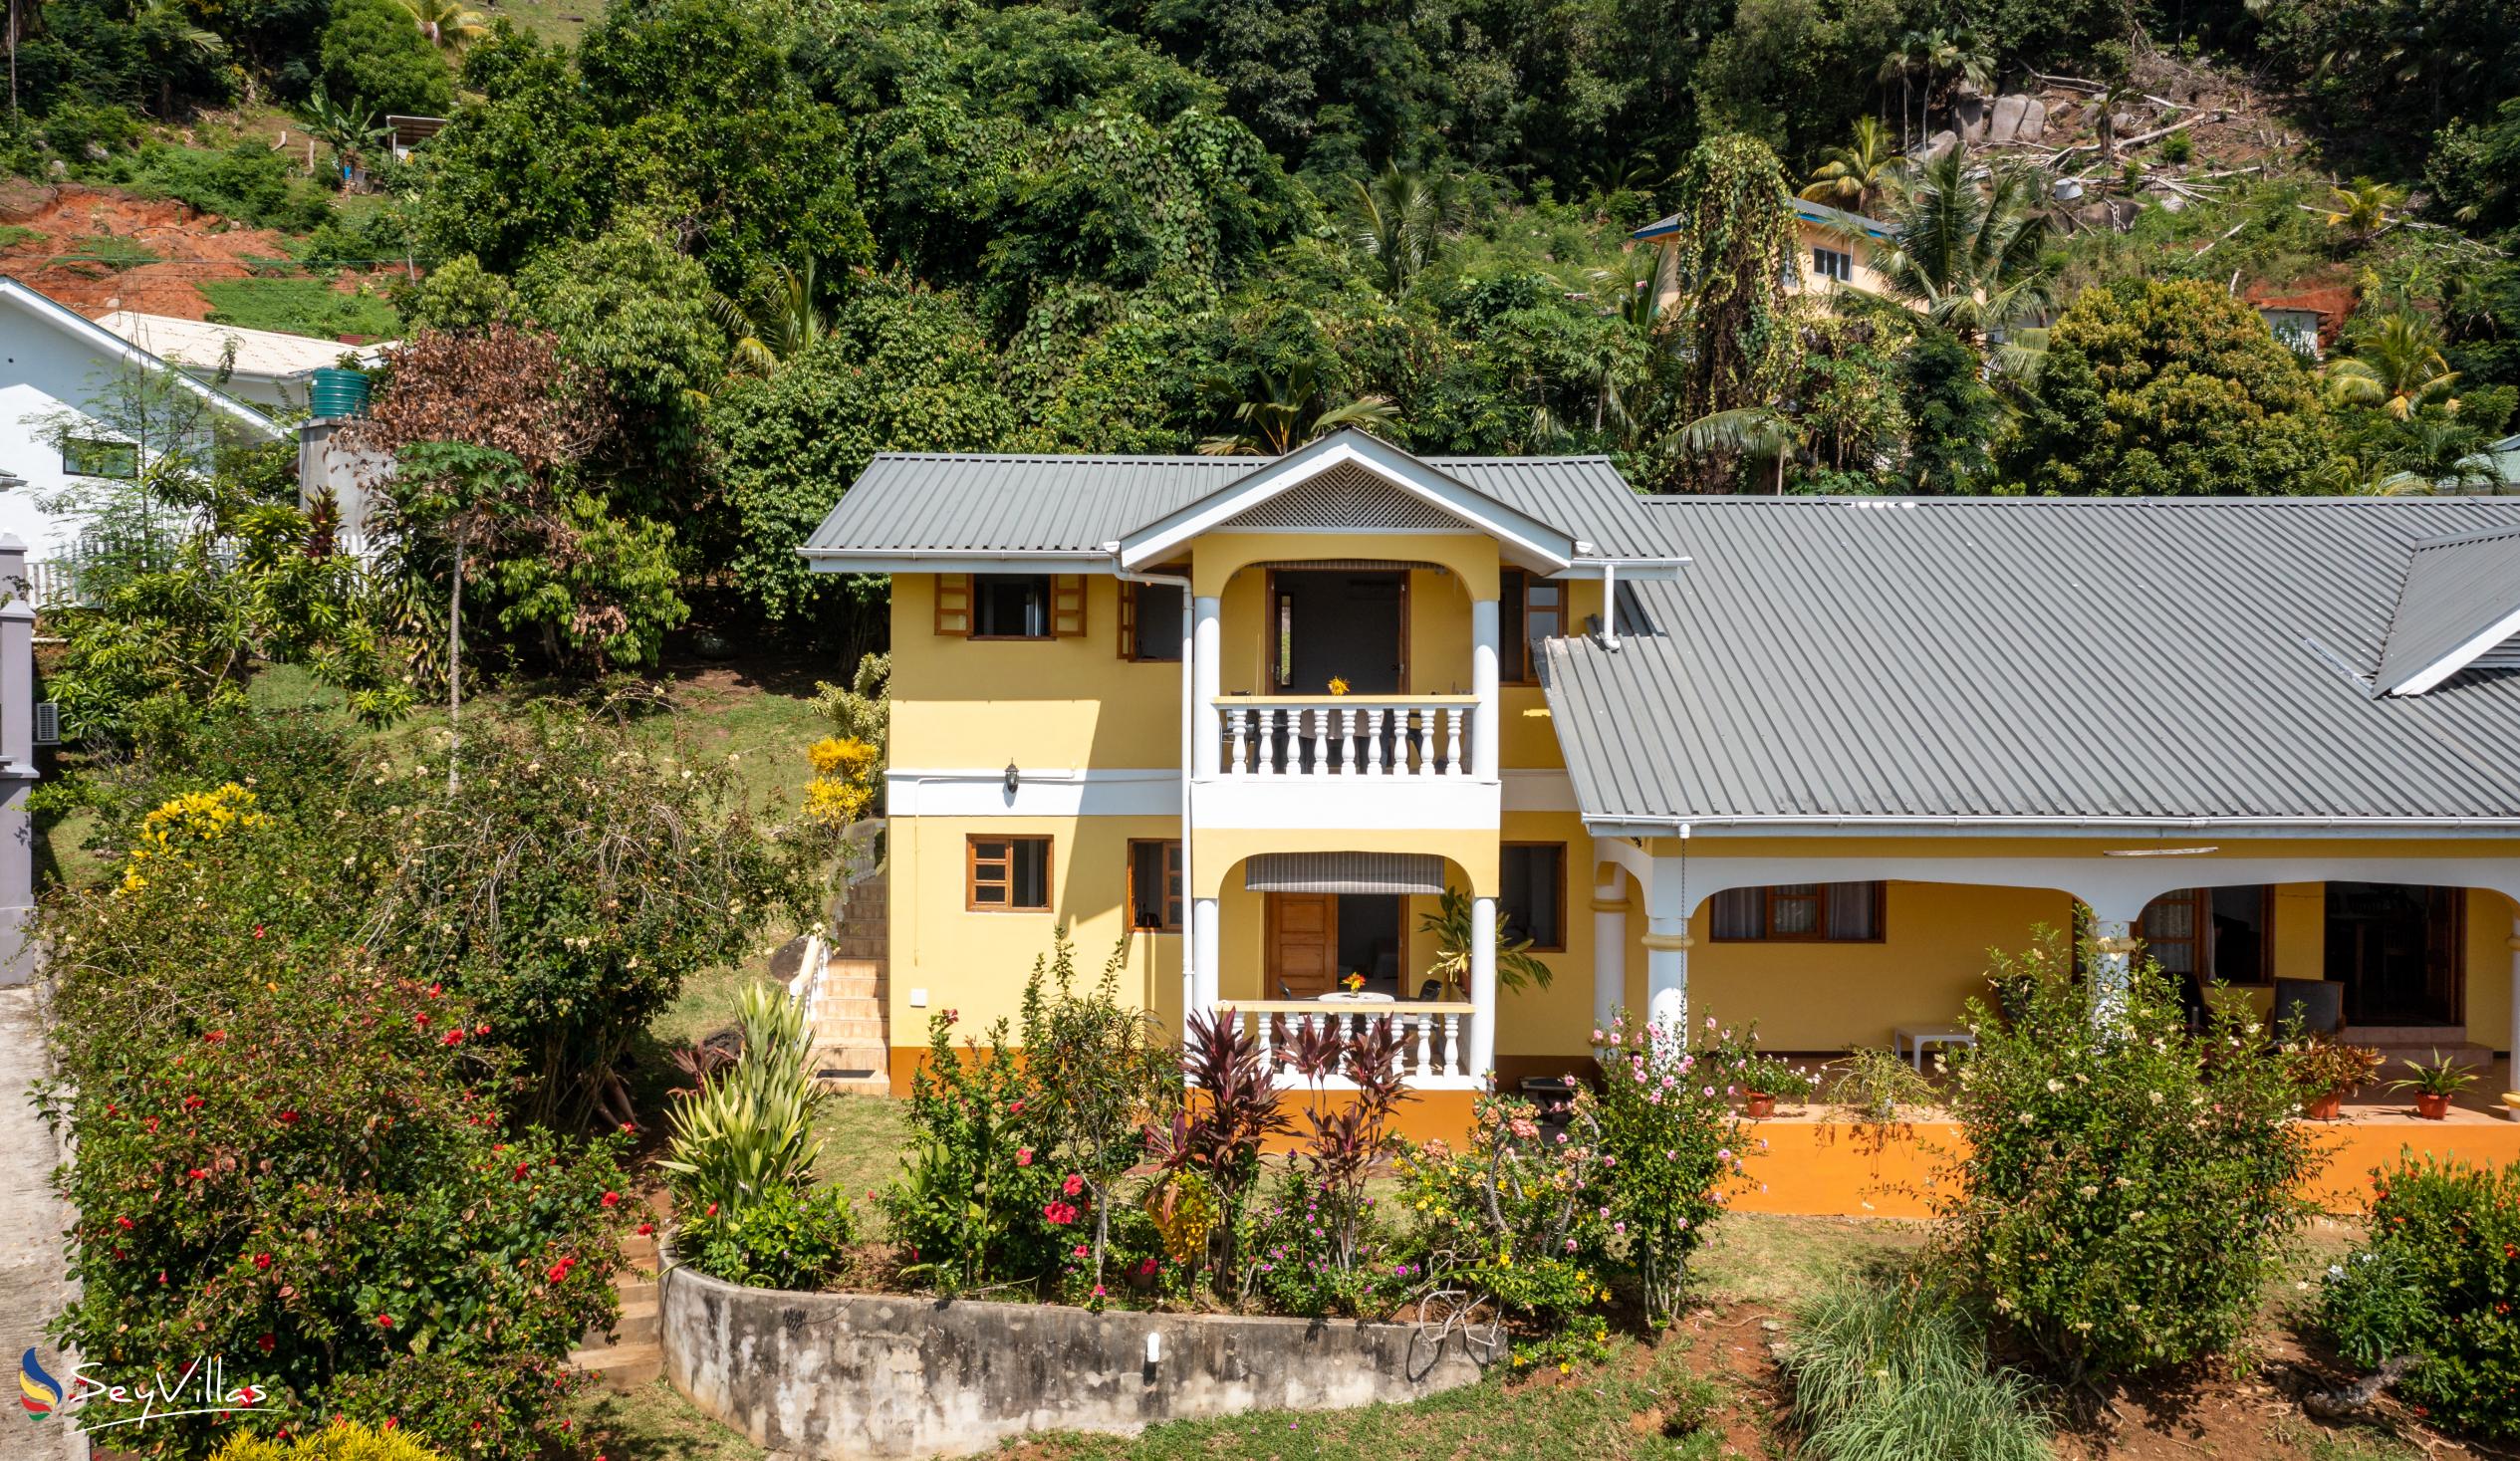 Foto 6: Maison Marikel - Aussenbereich - Mahé (Seychellen)